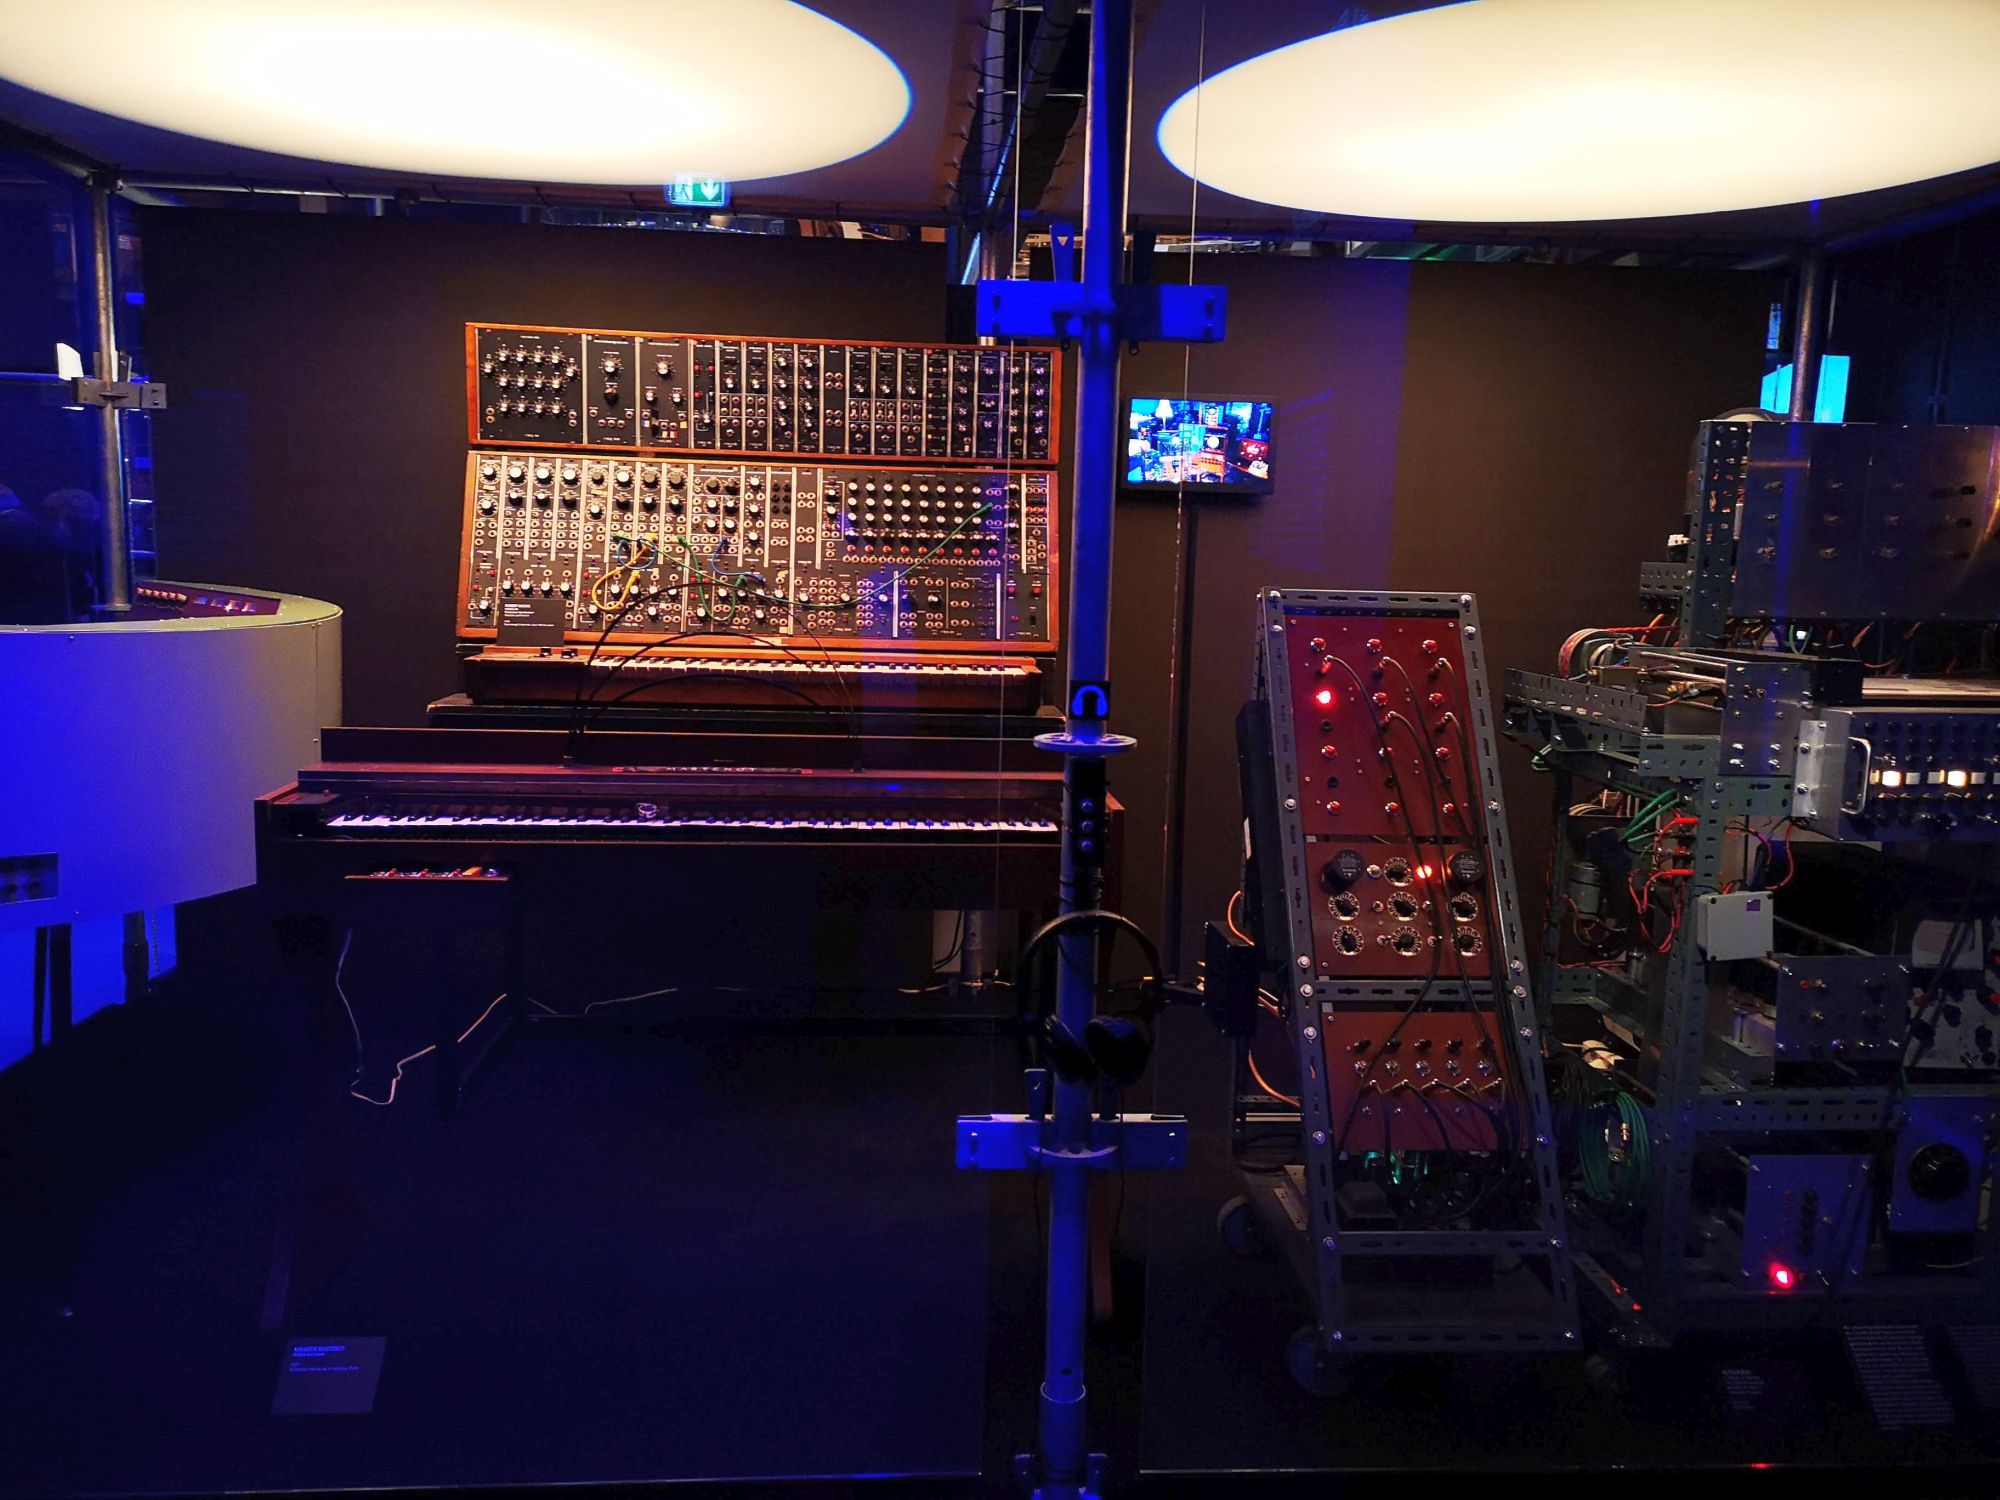 Ein frühes Synthesizer-Monster in der Ausstellung "Electro" im Düsseldorfer Kunstpalast (Foto: The Düsseldorfer)